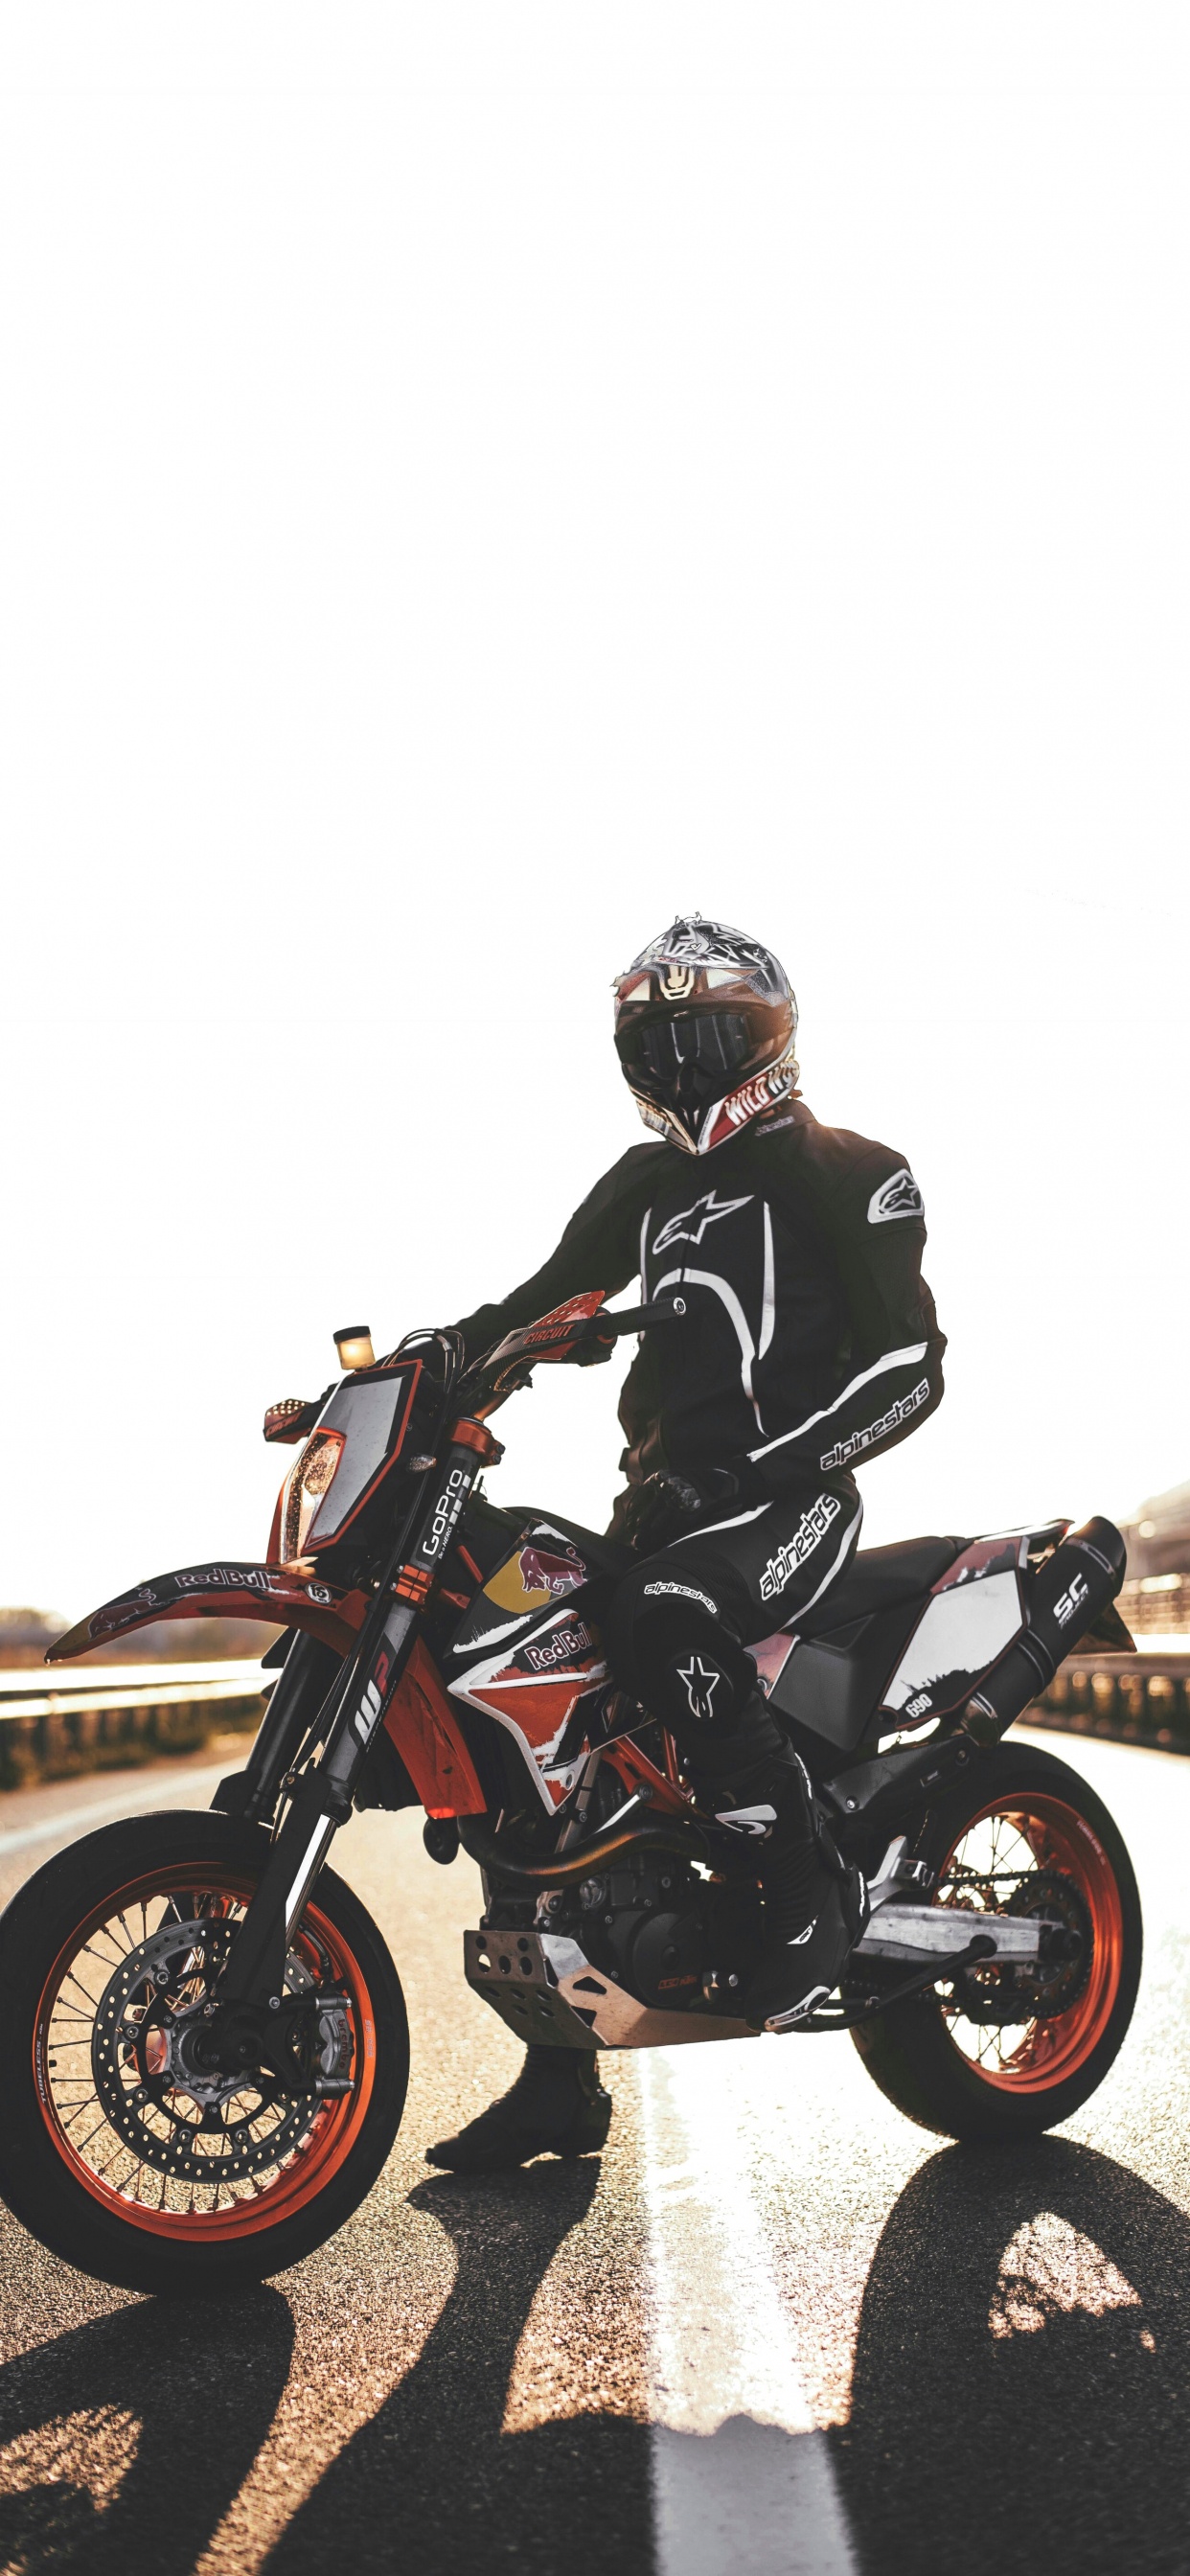 Hombre de Chaqueta Negra Montando Motocicleta. Wallpaper in 1242x2688 Resolution